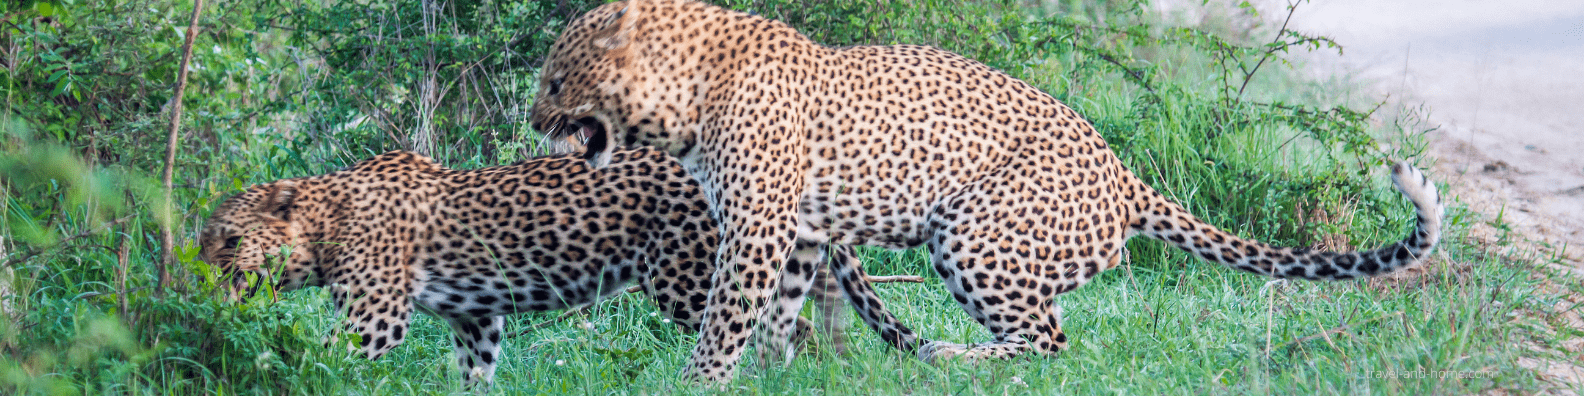 Kruger National Park leopards safari bush game reserve south africa tour